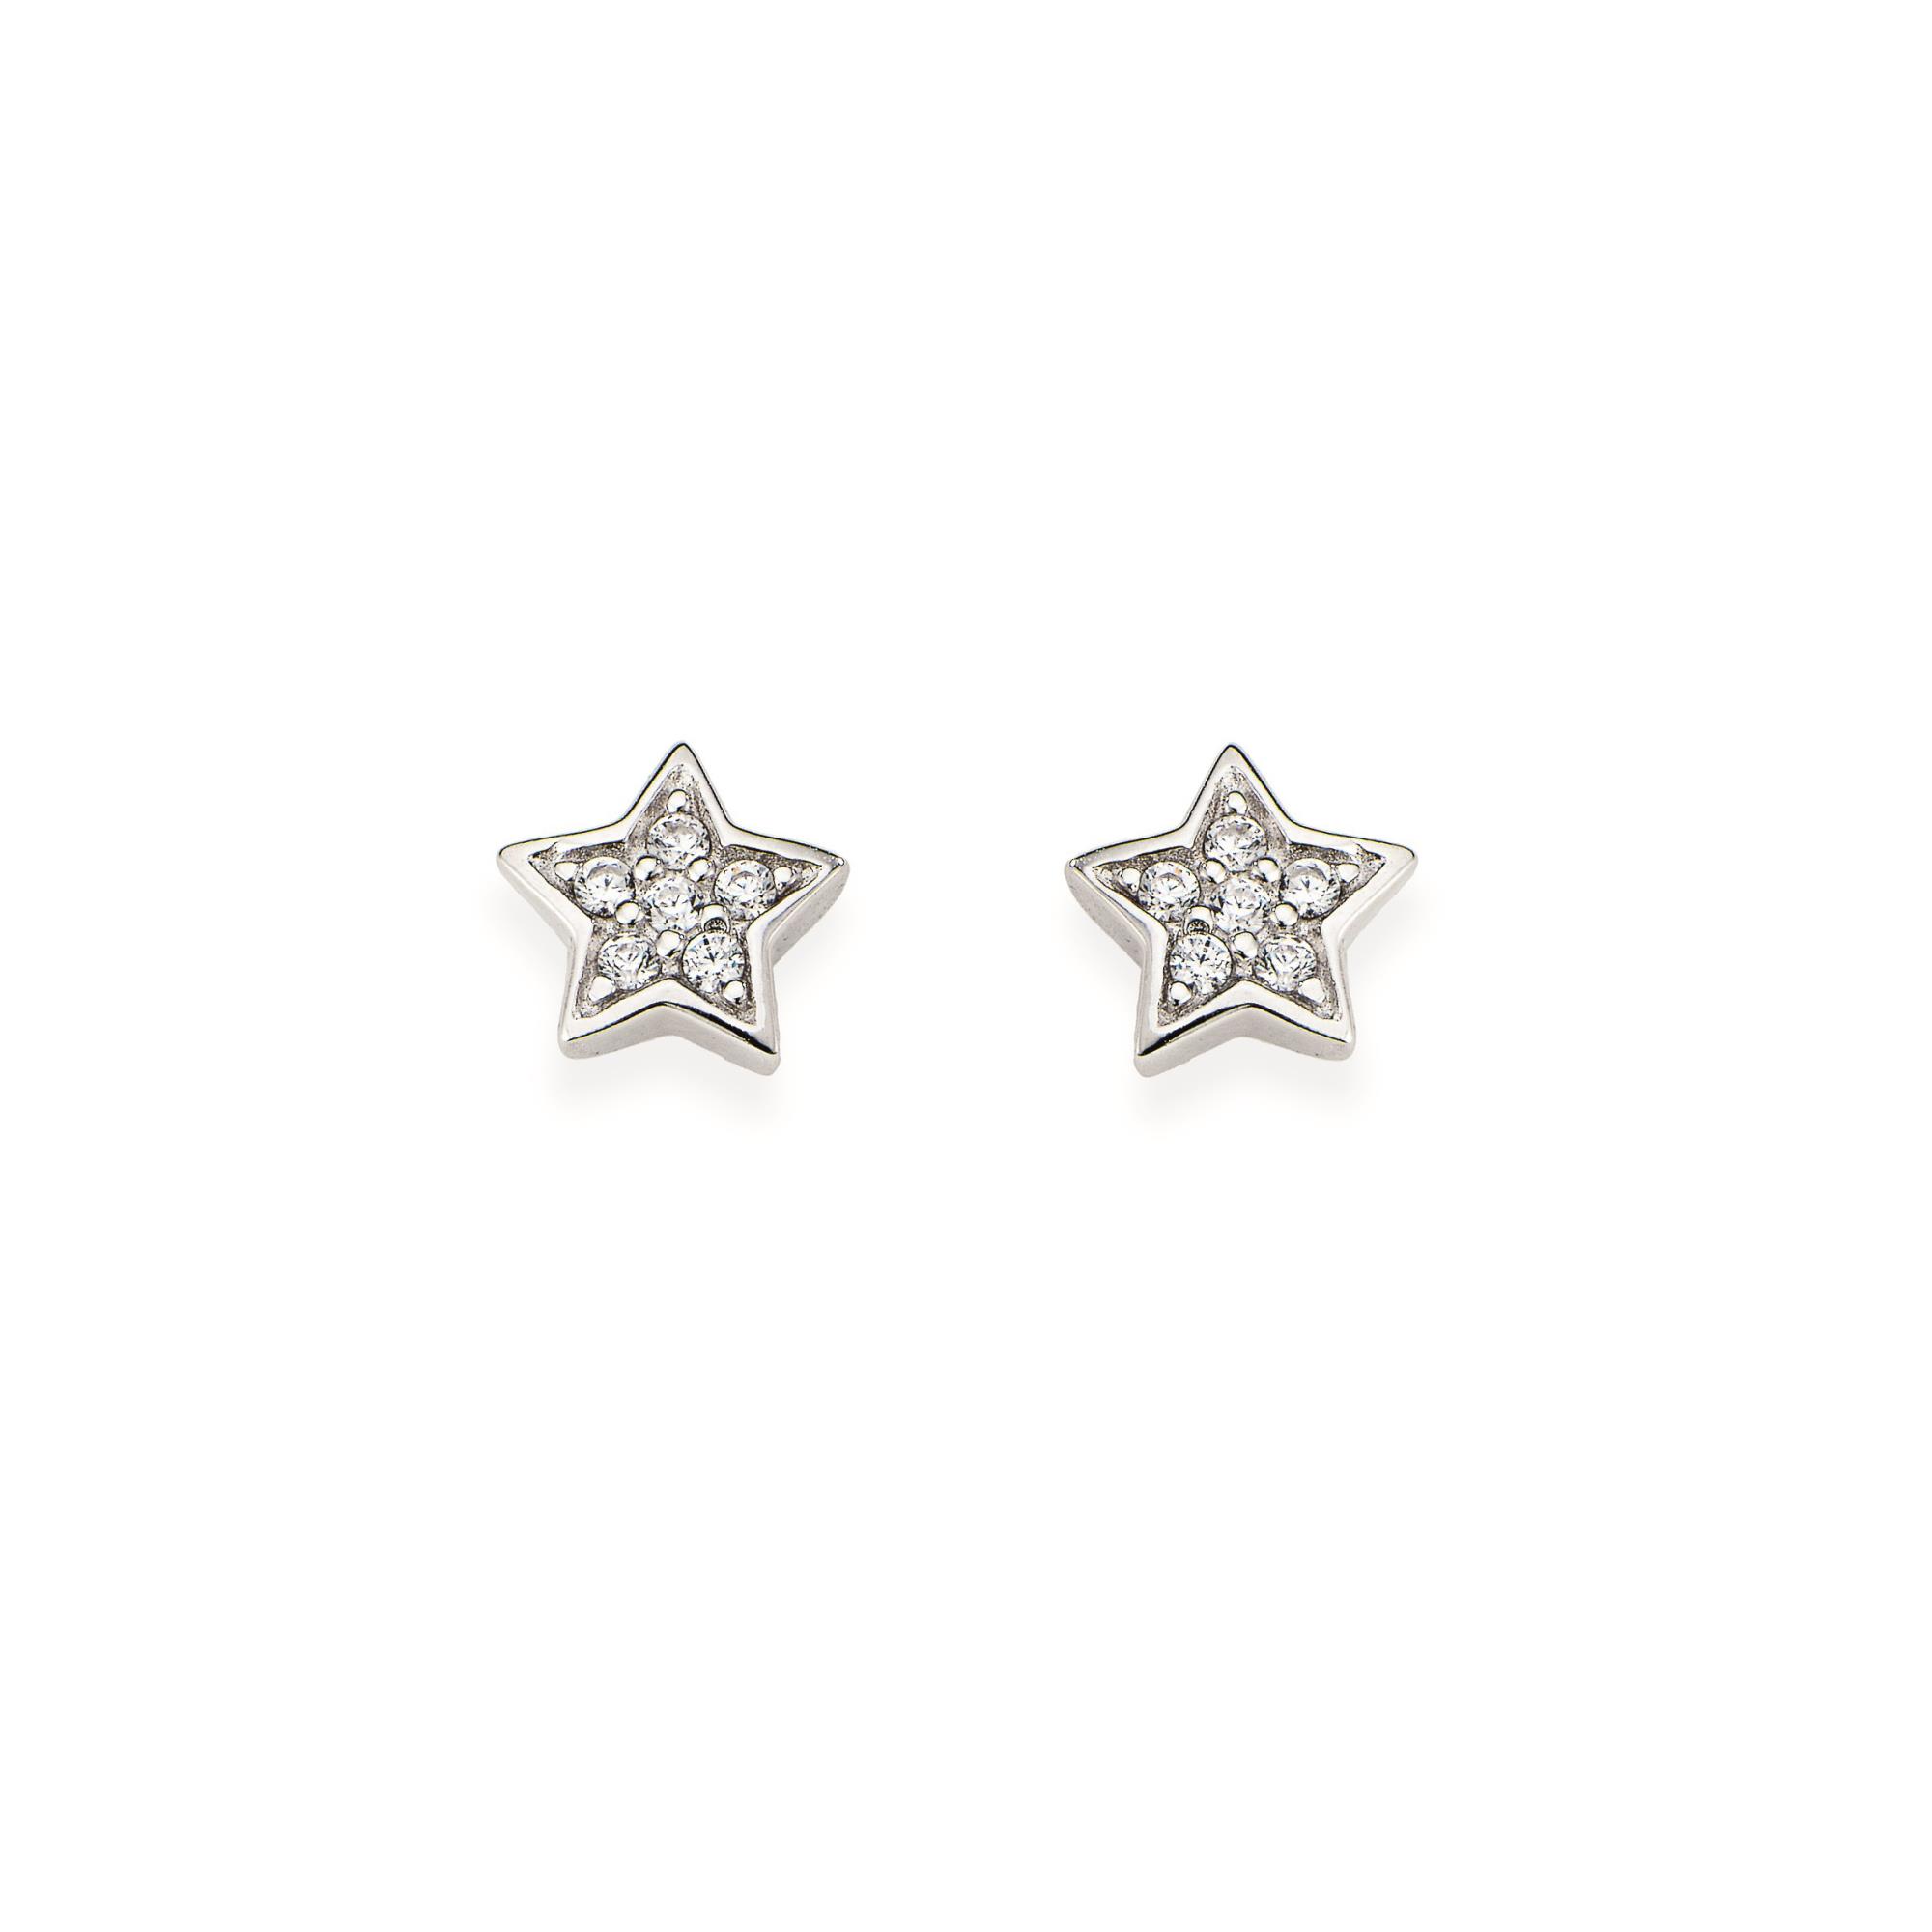 Silver earrings with stars - AMEN